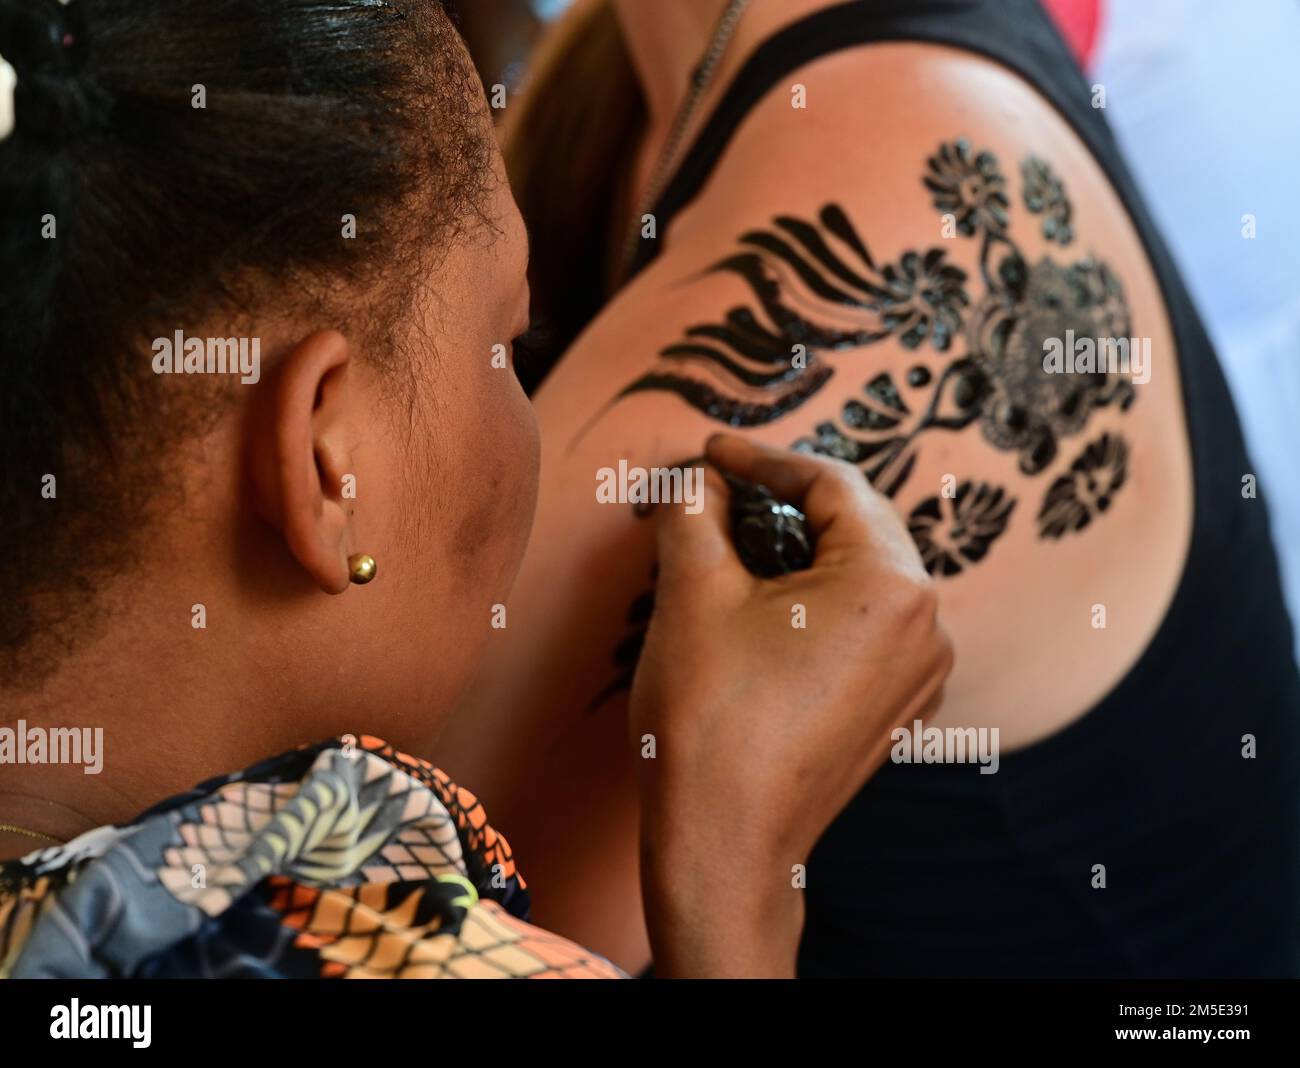 Tattoo association immagini e fotografie stock ad alta risoluzione - Alamy